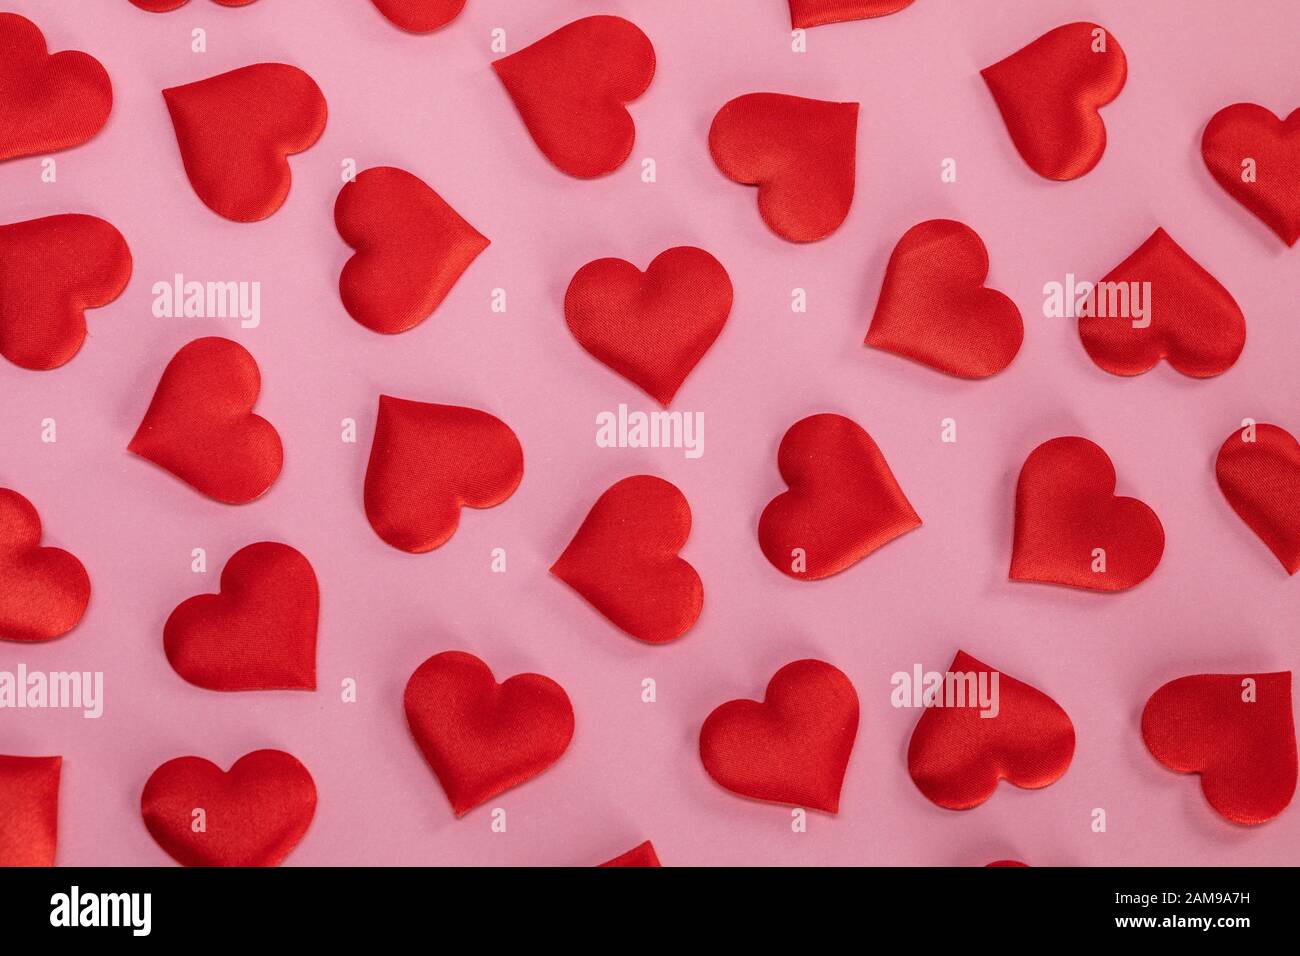 San Valentino molti cuori di seta rossa su sfondo di carta rosa, concetto di amore Foto Stock